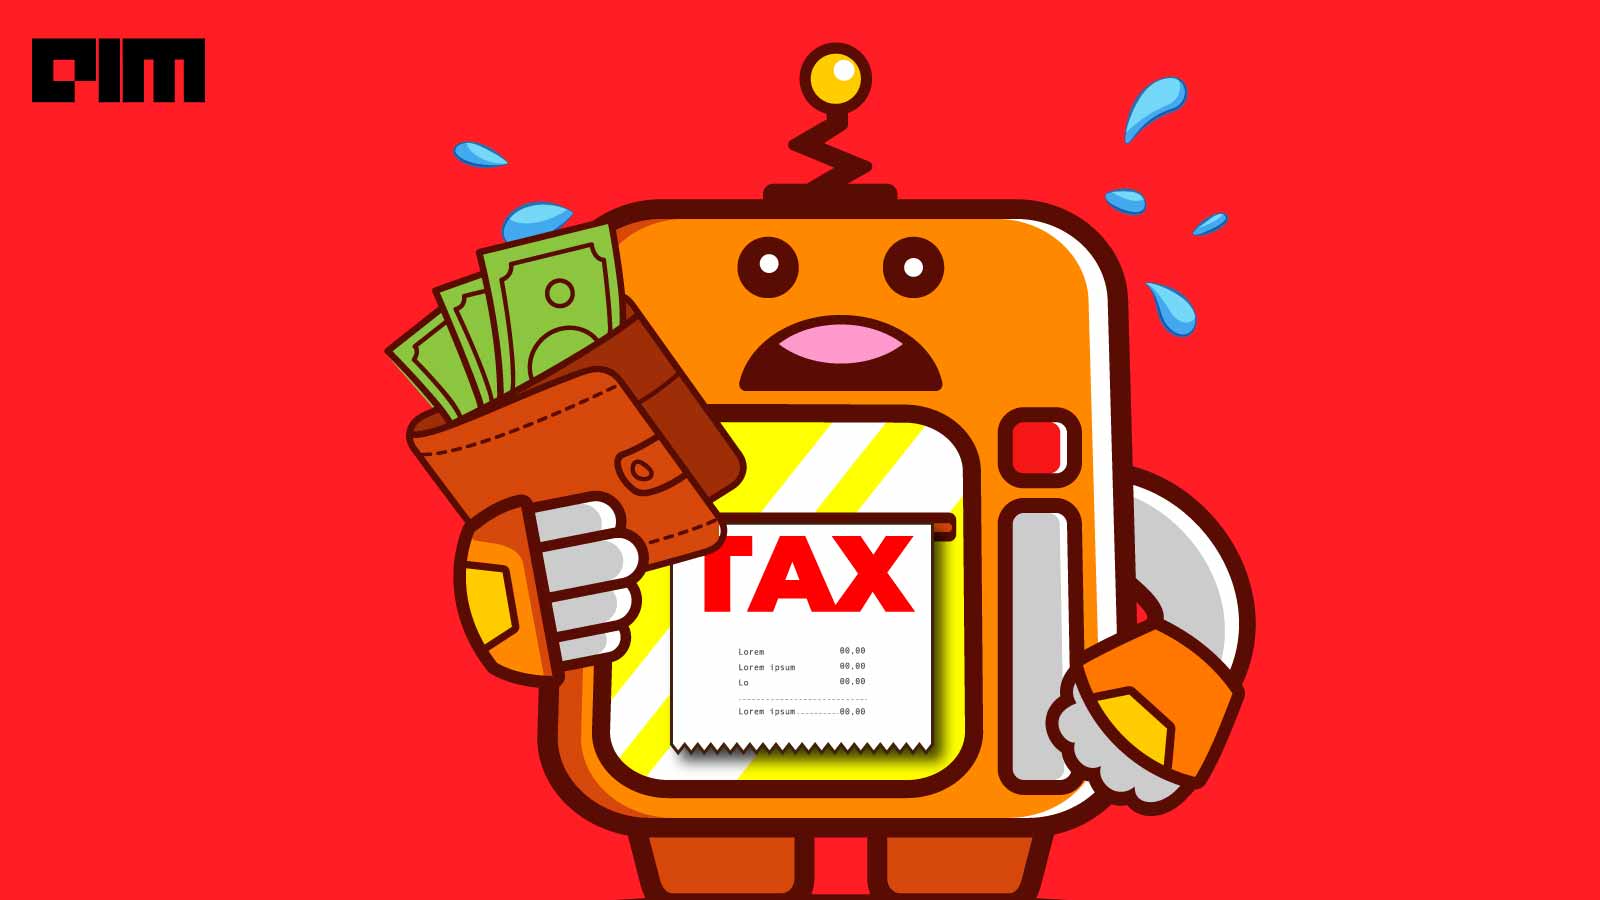 Robot Tax